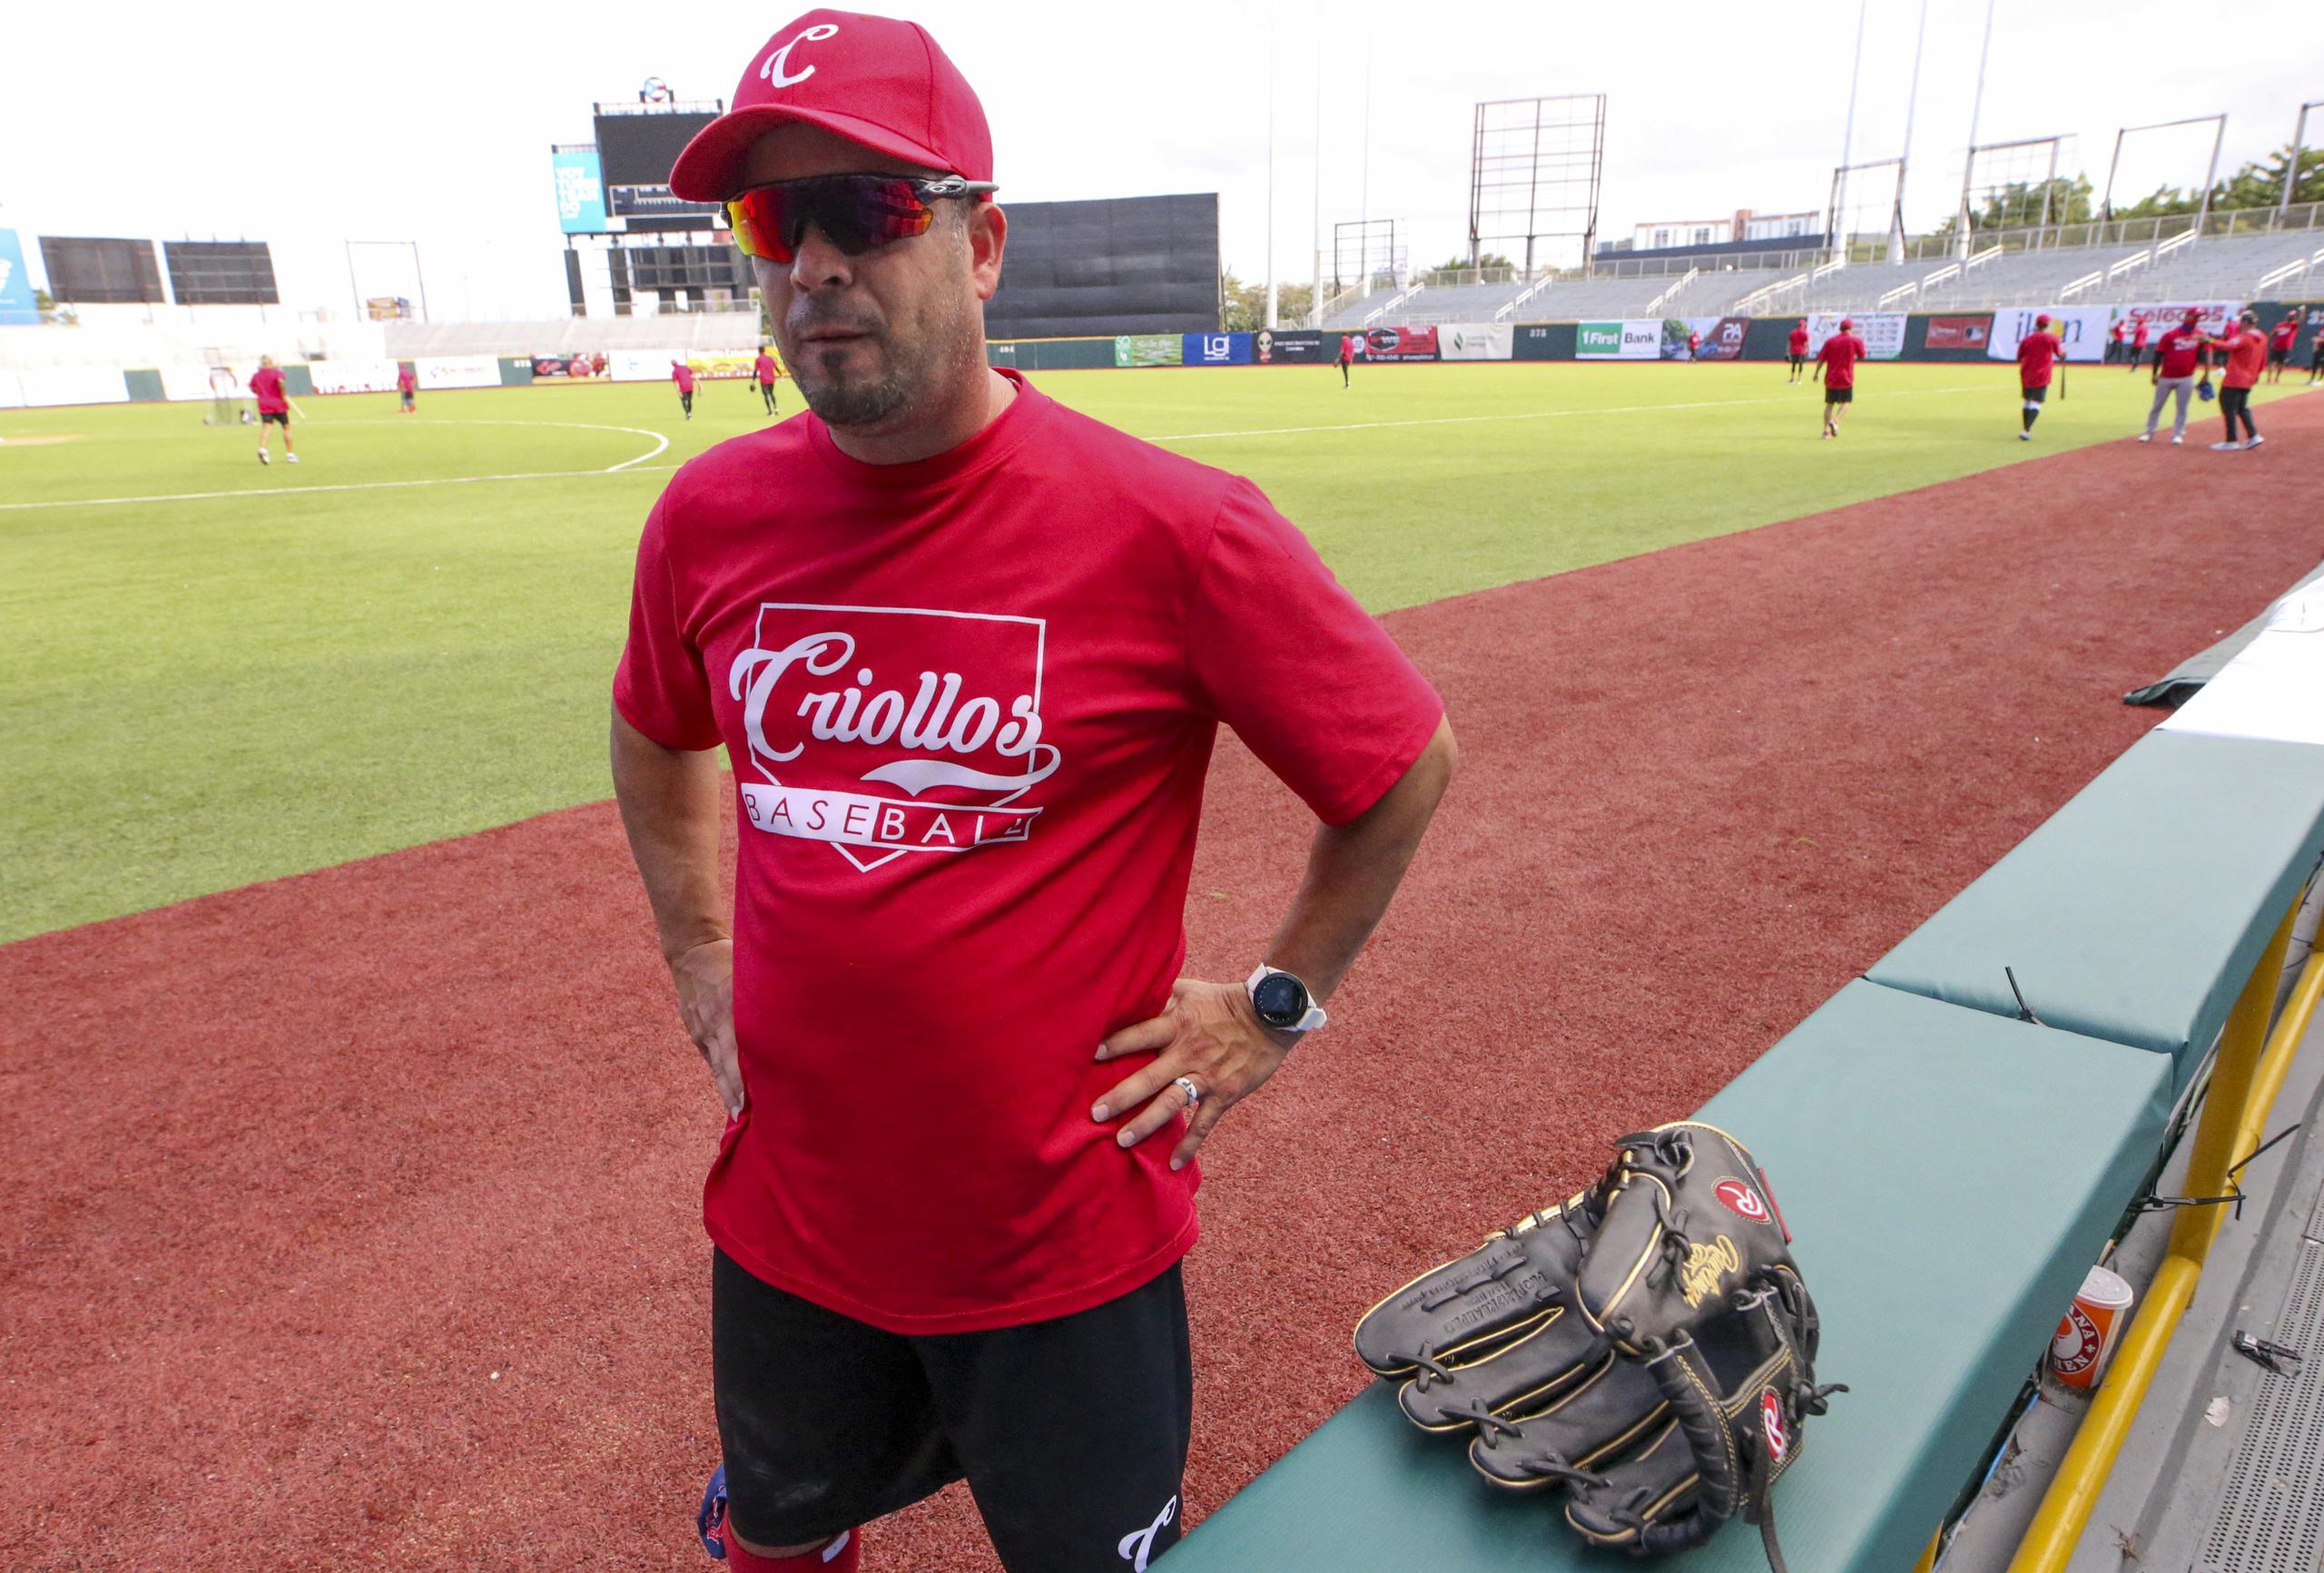 El dirigente de los Criollos de Caguas y coach de grandes ligas, Ramón Vázquez, fue confirmado el martes como nuevo coach del banco de los Red Sox de Boston, por lo que será la mano derecha de Álex Cora en el equipo.